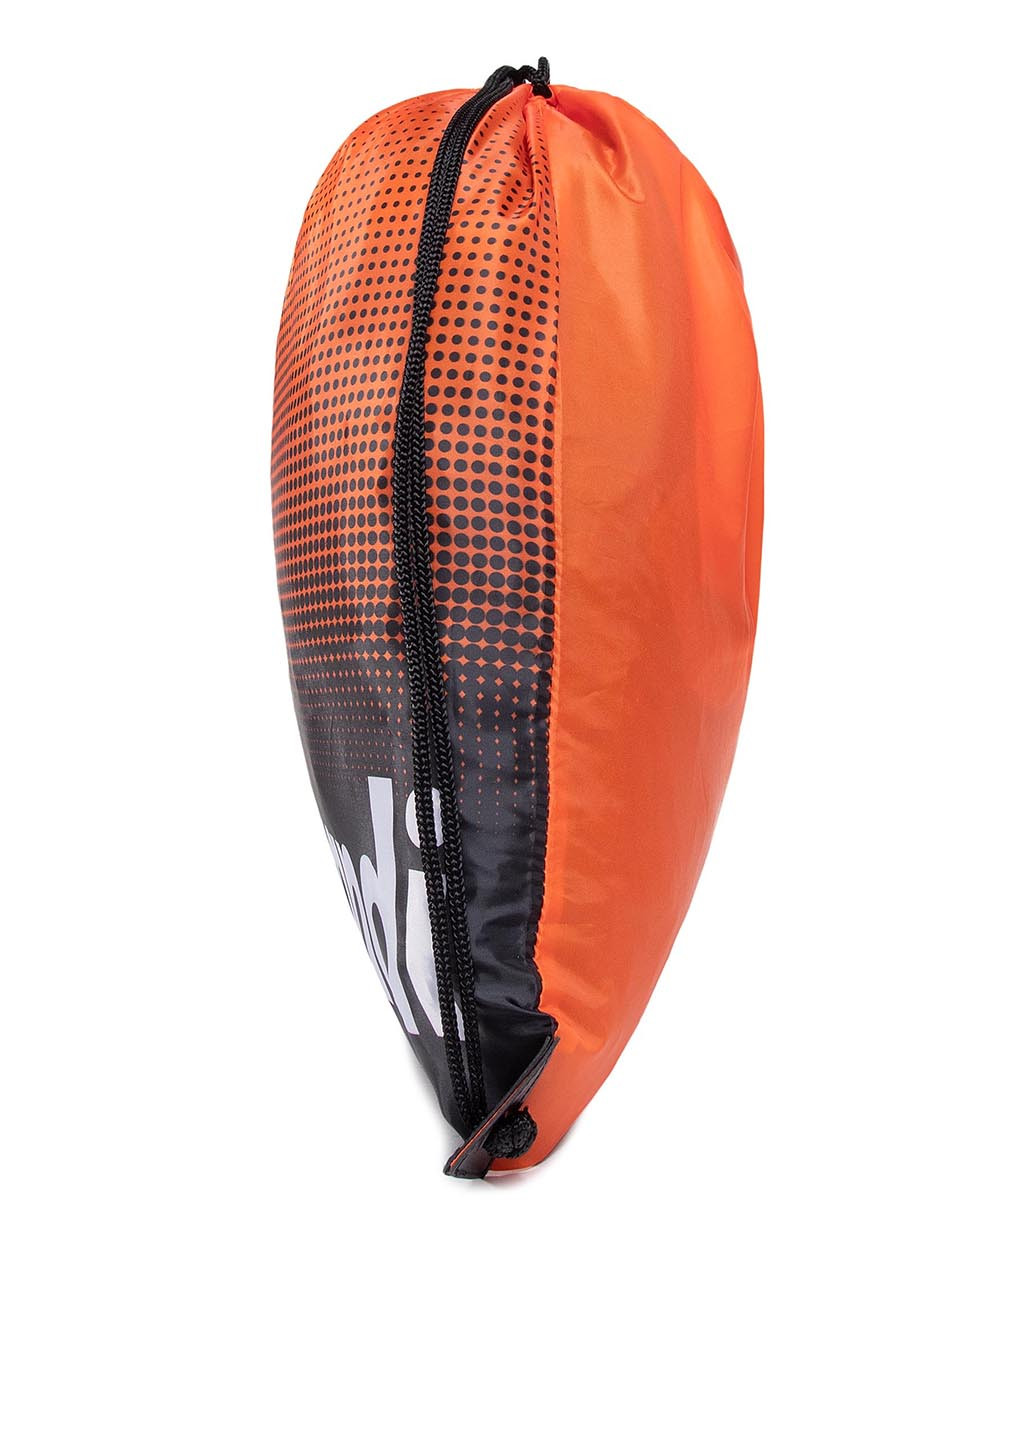 Мішок для взуття Sprandi BSP-S-022-16-05 сумка-мешок геометрическая комбинированная спортивная